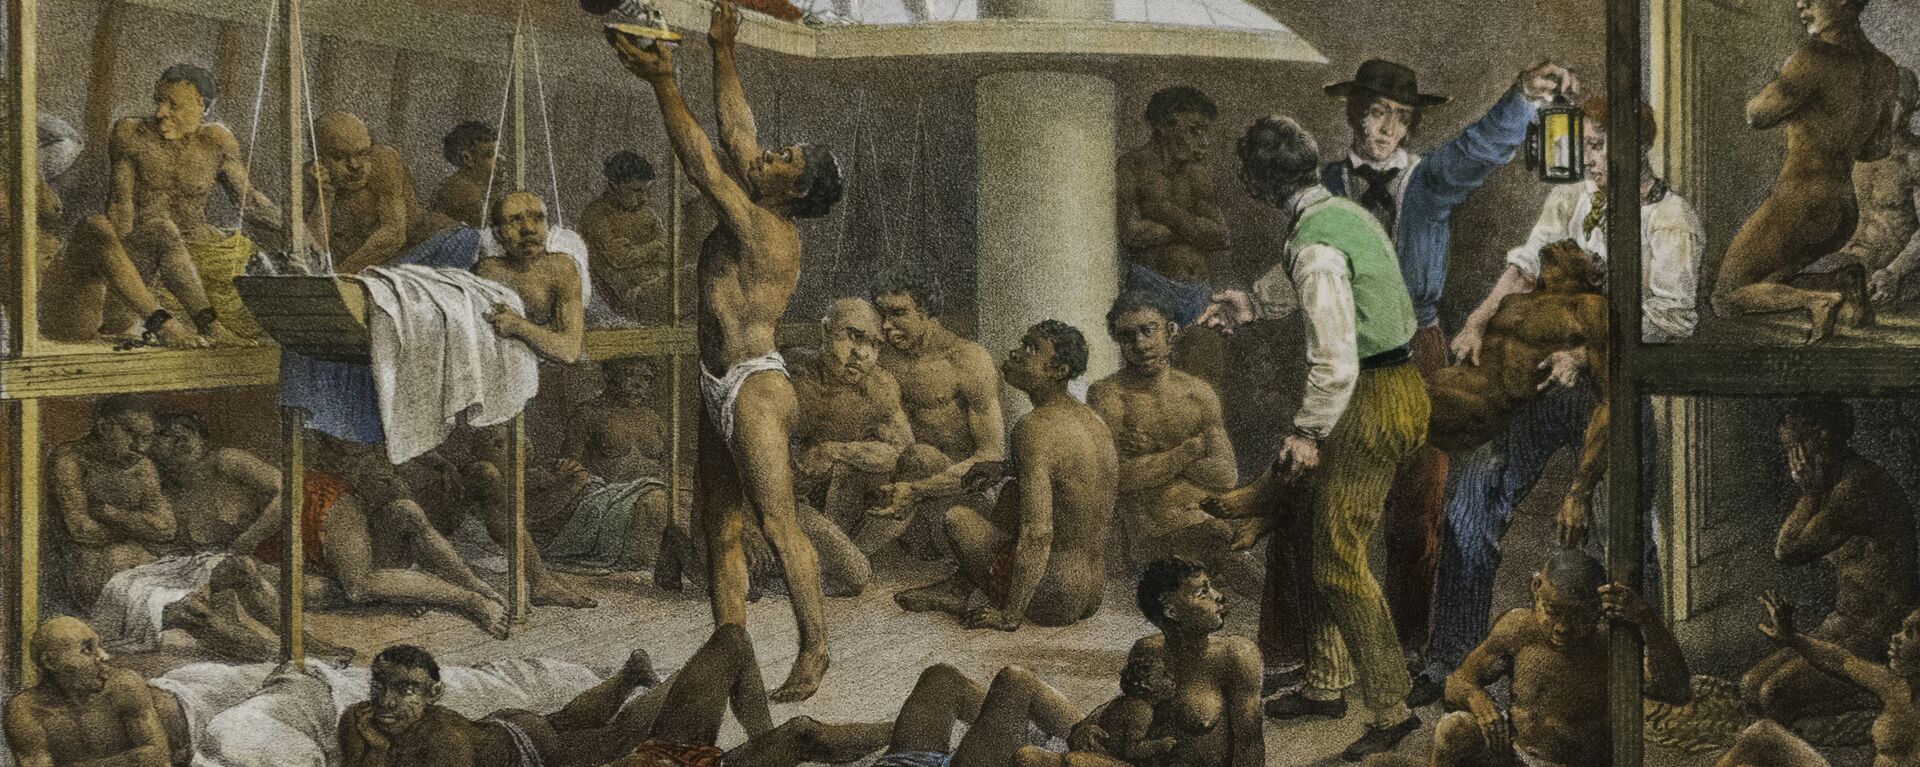 Navío negrero, cuadro del pintor alemán Johann Moritz Rugendas de 1830 que retrata las condiciones con las que se llevaba a los esclavos de África a las colonias de América - Sputnik Mundo, 1920, 05.05.2021